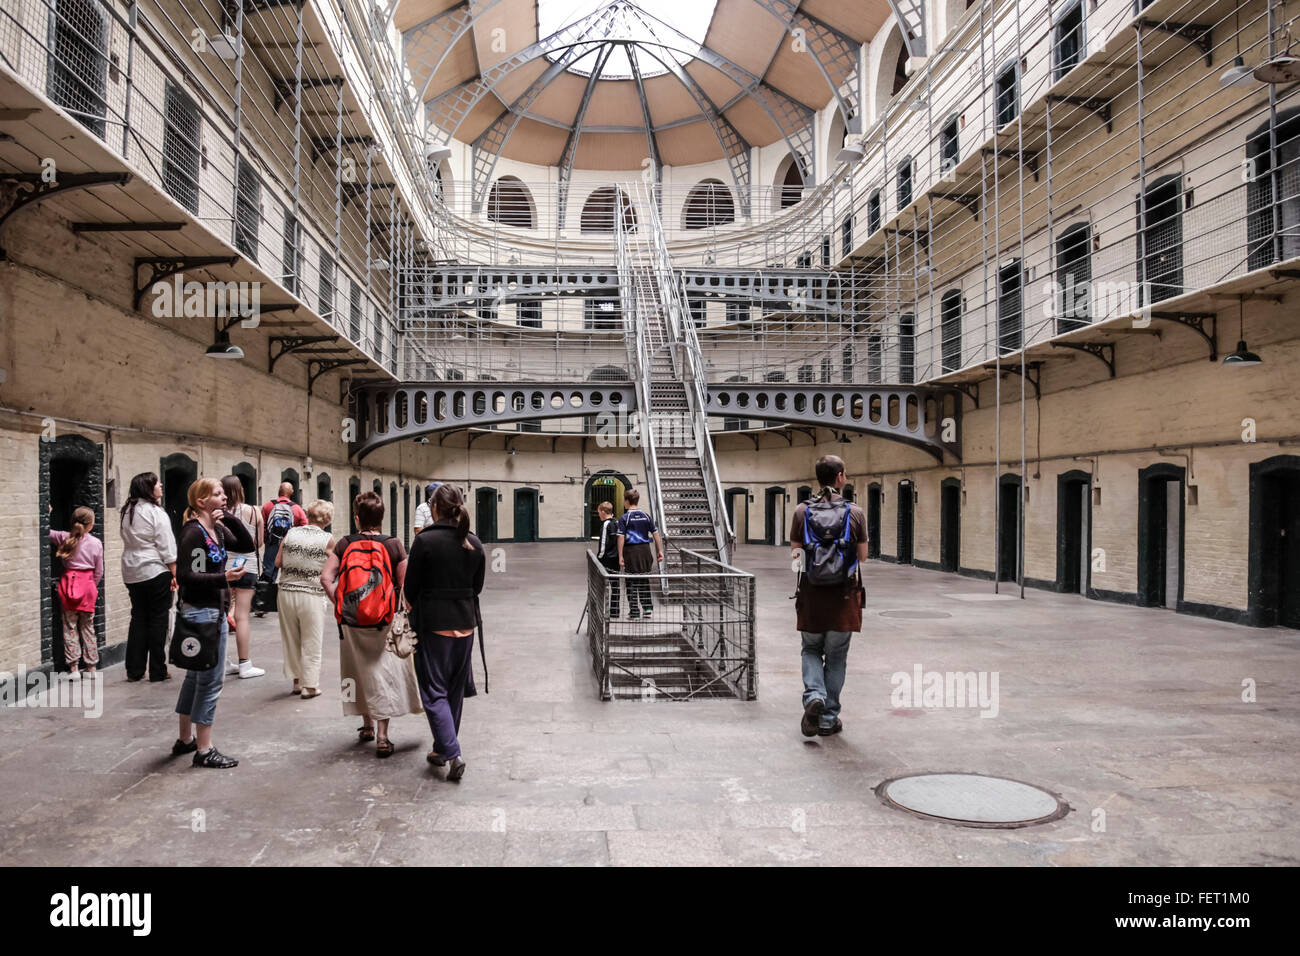 Un groupe de touristes dans l'aile de Kilmainham Gaol, tristement célèbre prison historique de Dublin, République d'Irlande. Banque D'Images